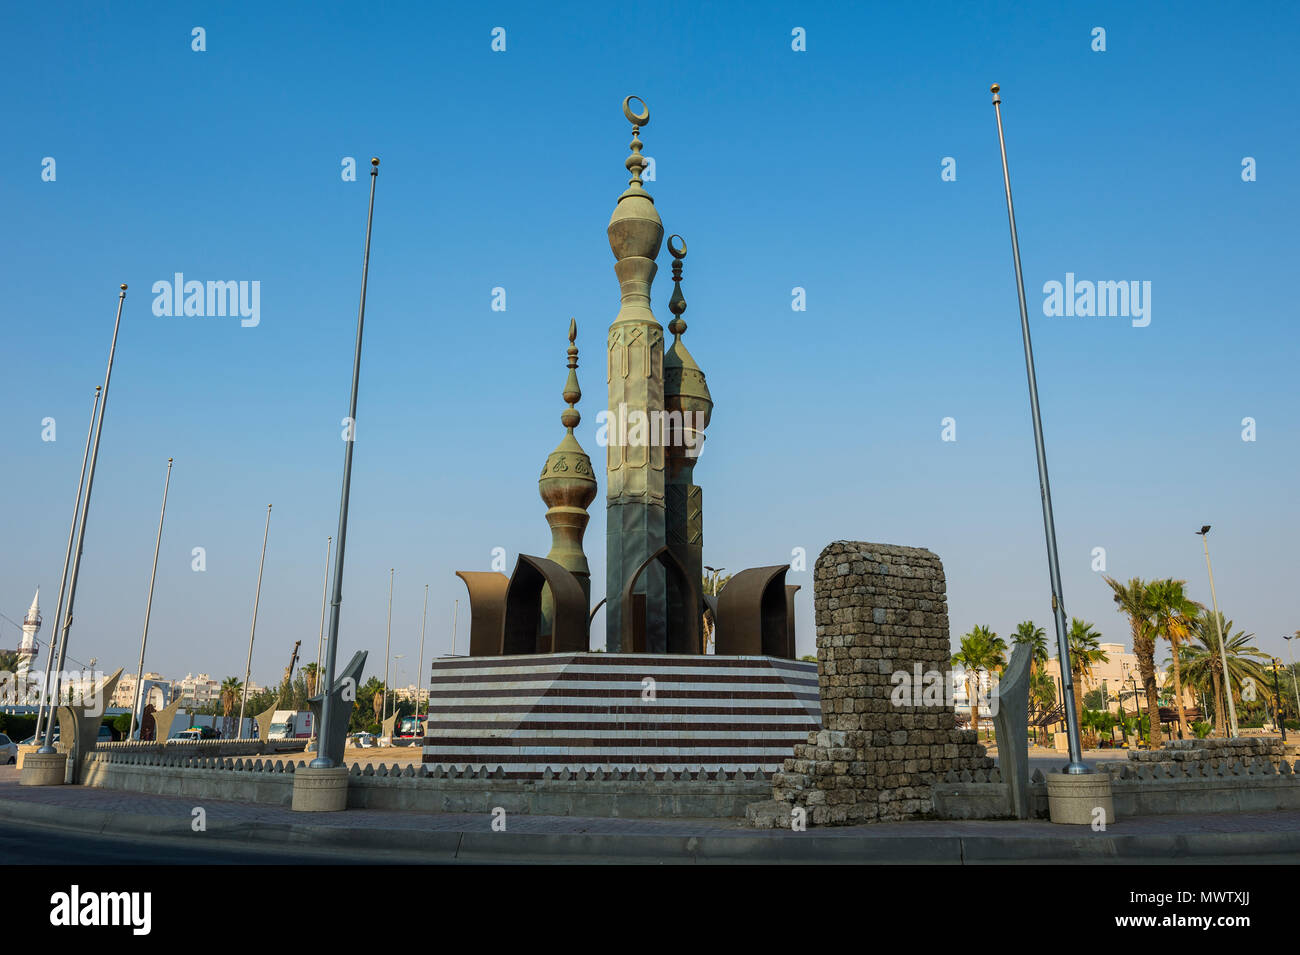 Bel monumento all'ingresso della città vecchia di Jeddah, Arabia Saudita, Medio Oriente Foto Stock